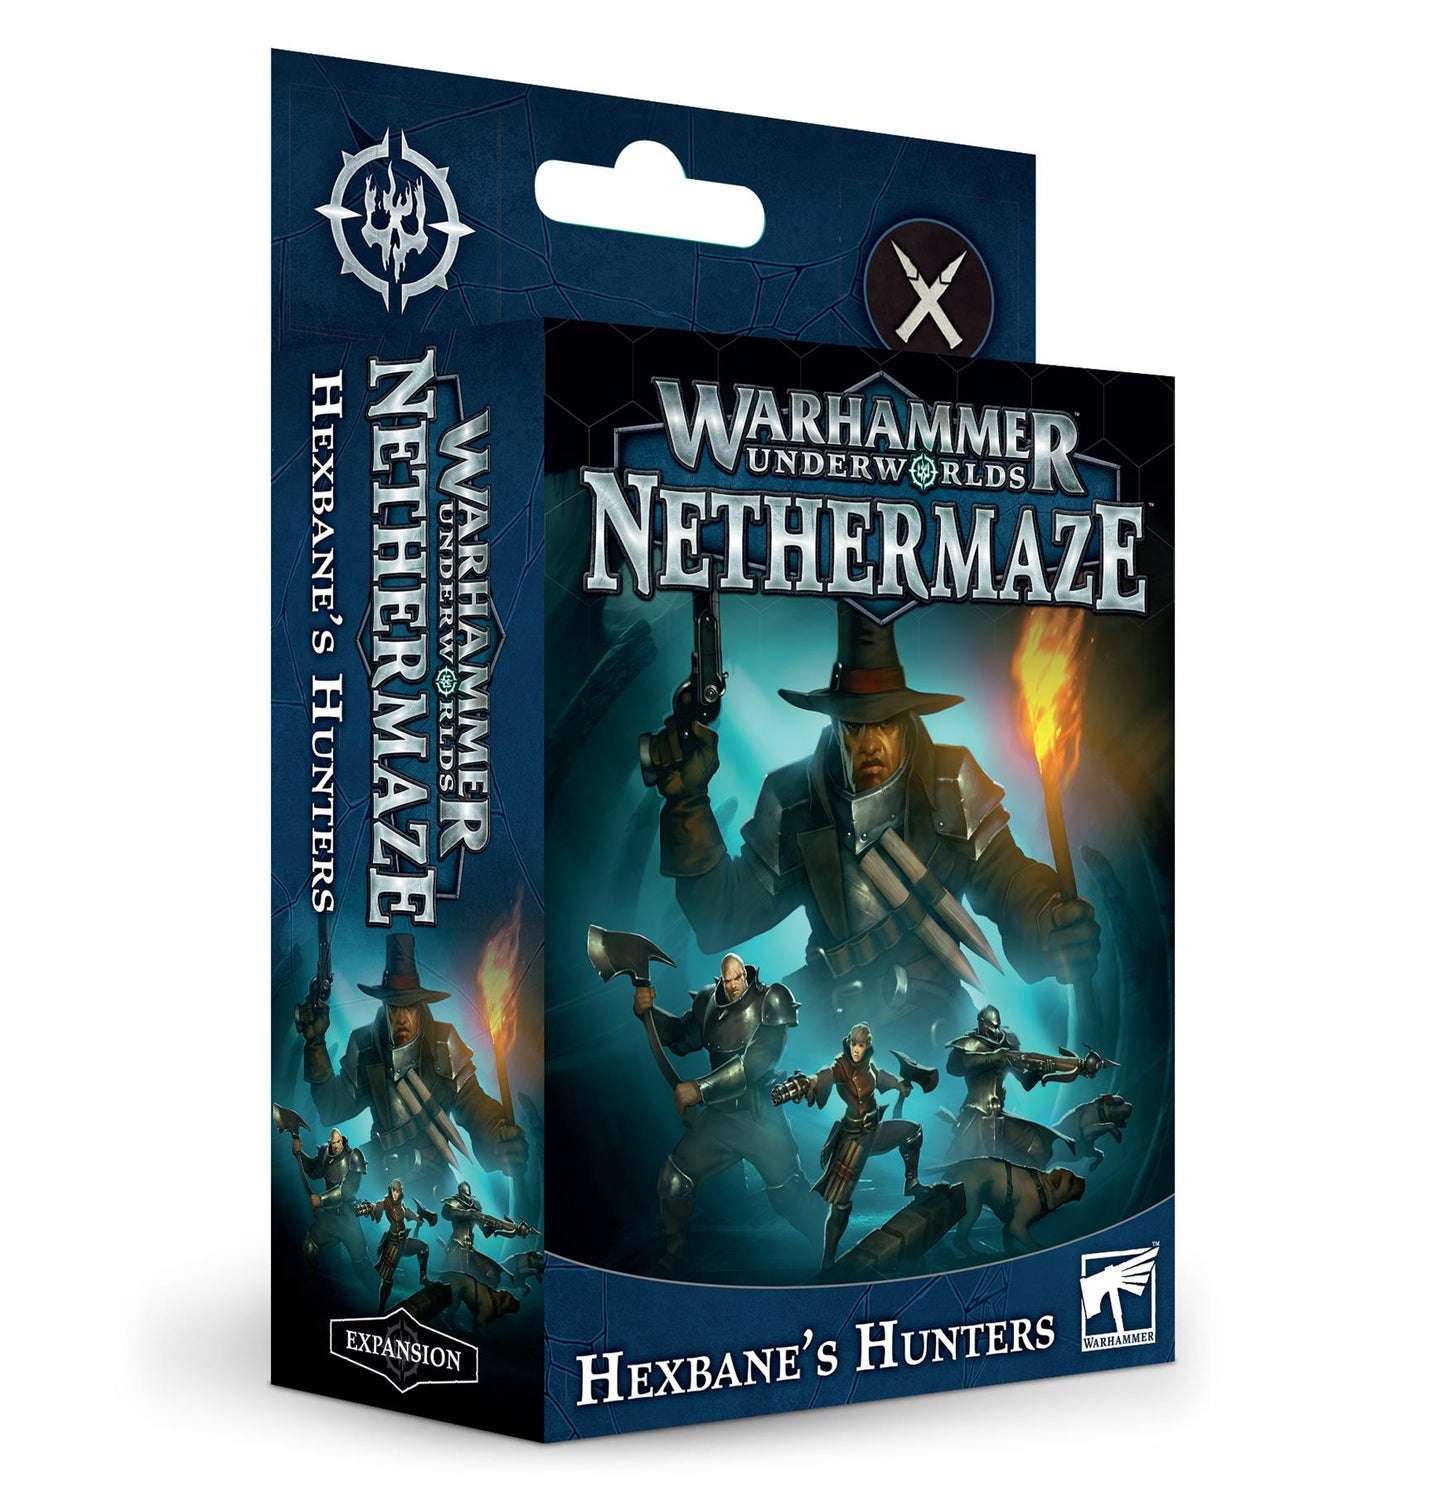 Hexbanes Hunters - Nethermaze - Warhammer Underworlds